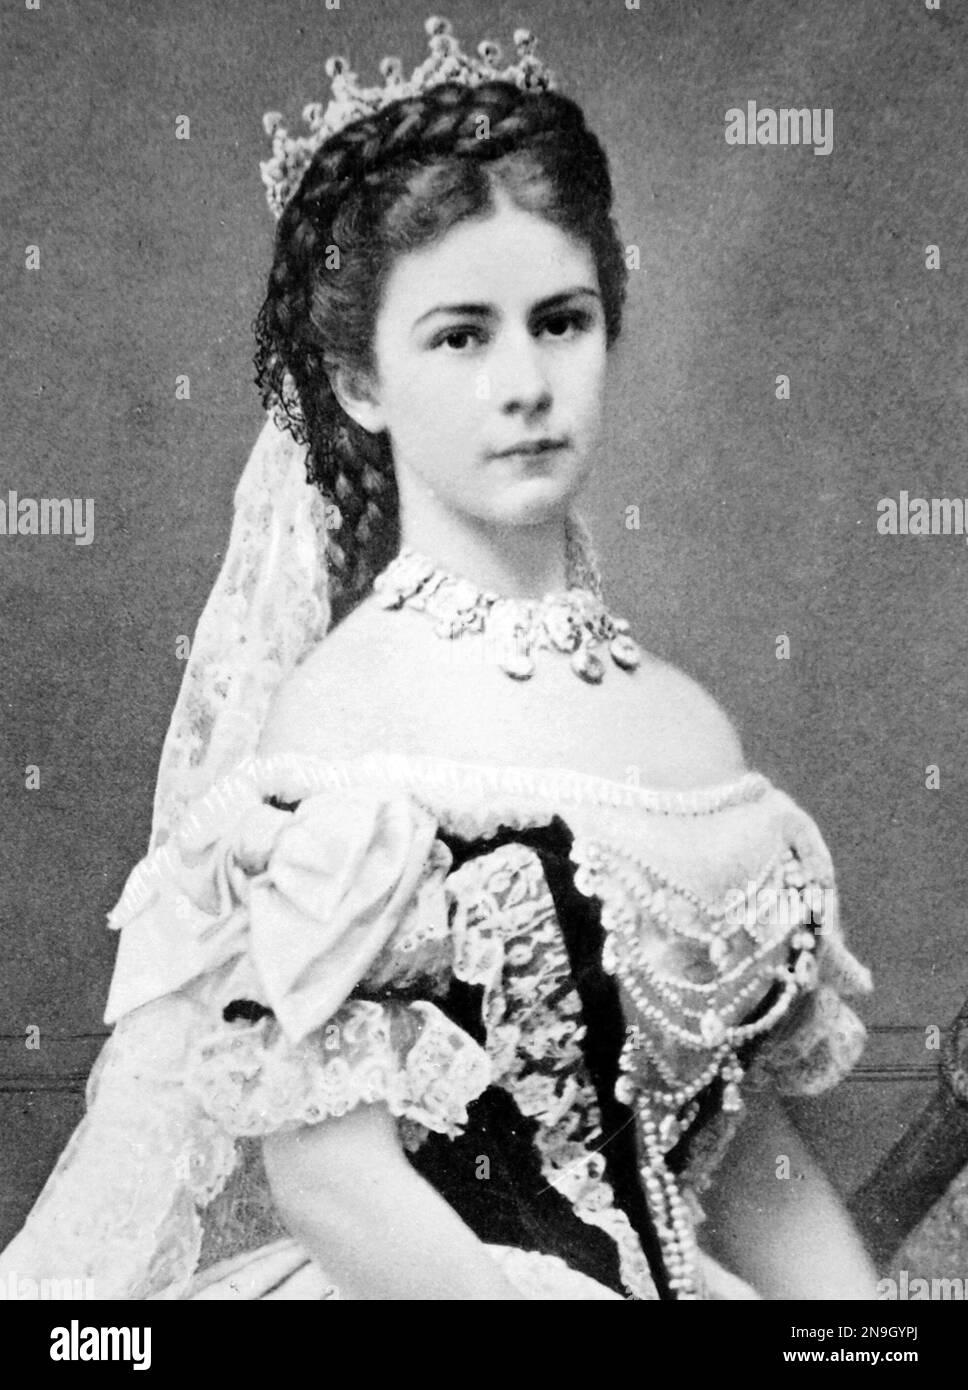 Elisabeth de Bavière (Elisabeth Amalie Eugénie; 24 décembre 1837 – 10 septembre 1898) fut impératrice d'Autriche et reine de Hongrie de son mariage avec l'empereur François-Joseph I le 24 avril 1854 jusqu'à son assassinat en 1898. Banque D'Images